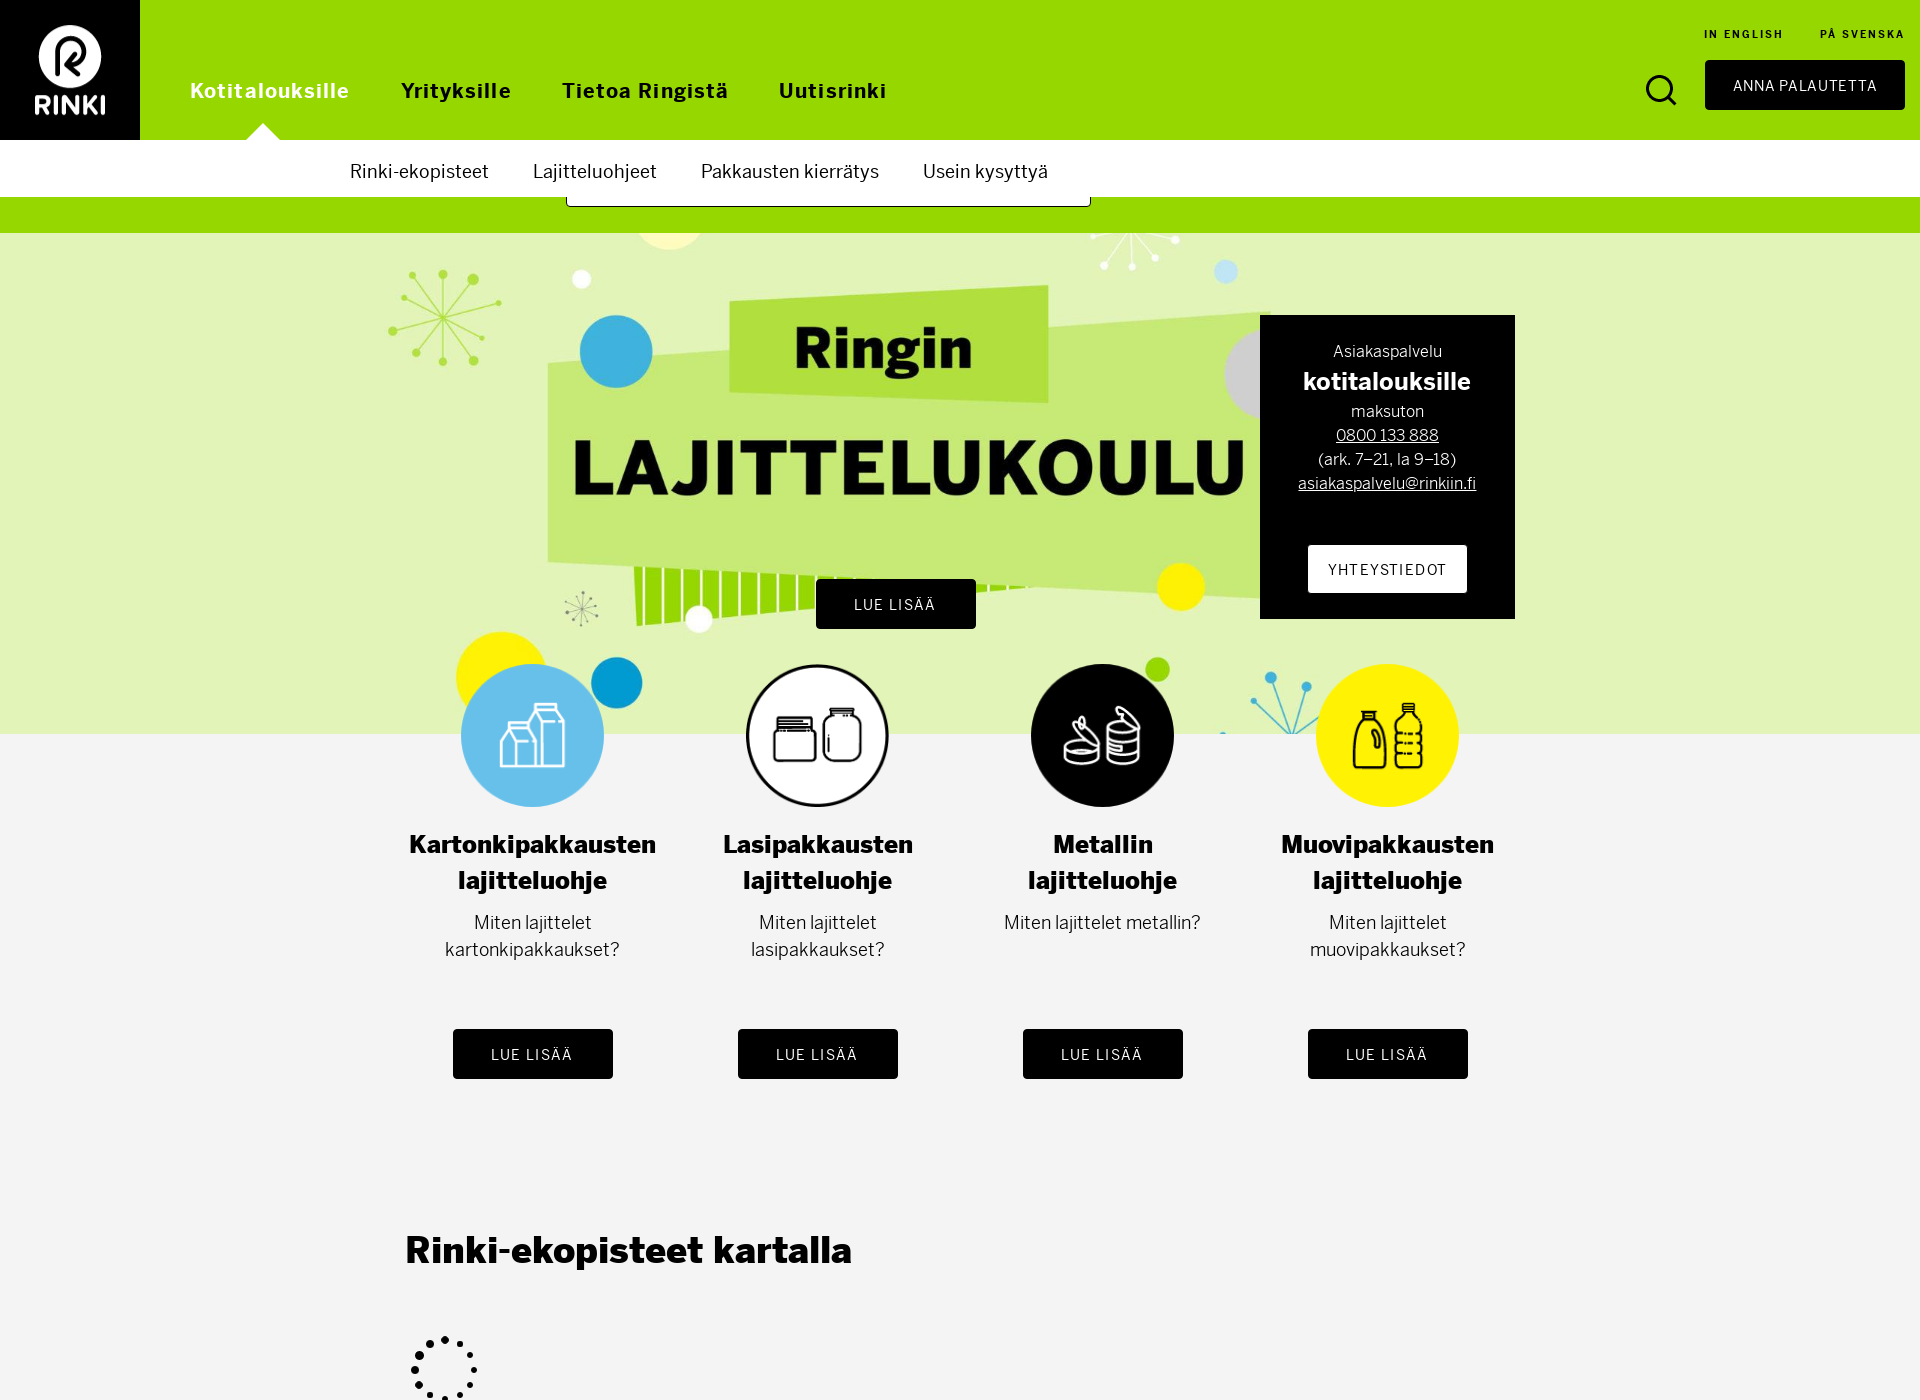 Skärmdump för suomenpakkauskierratys.fi